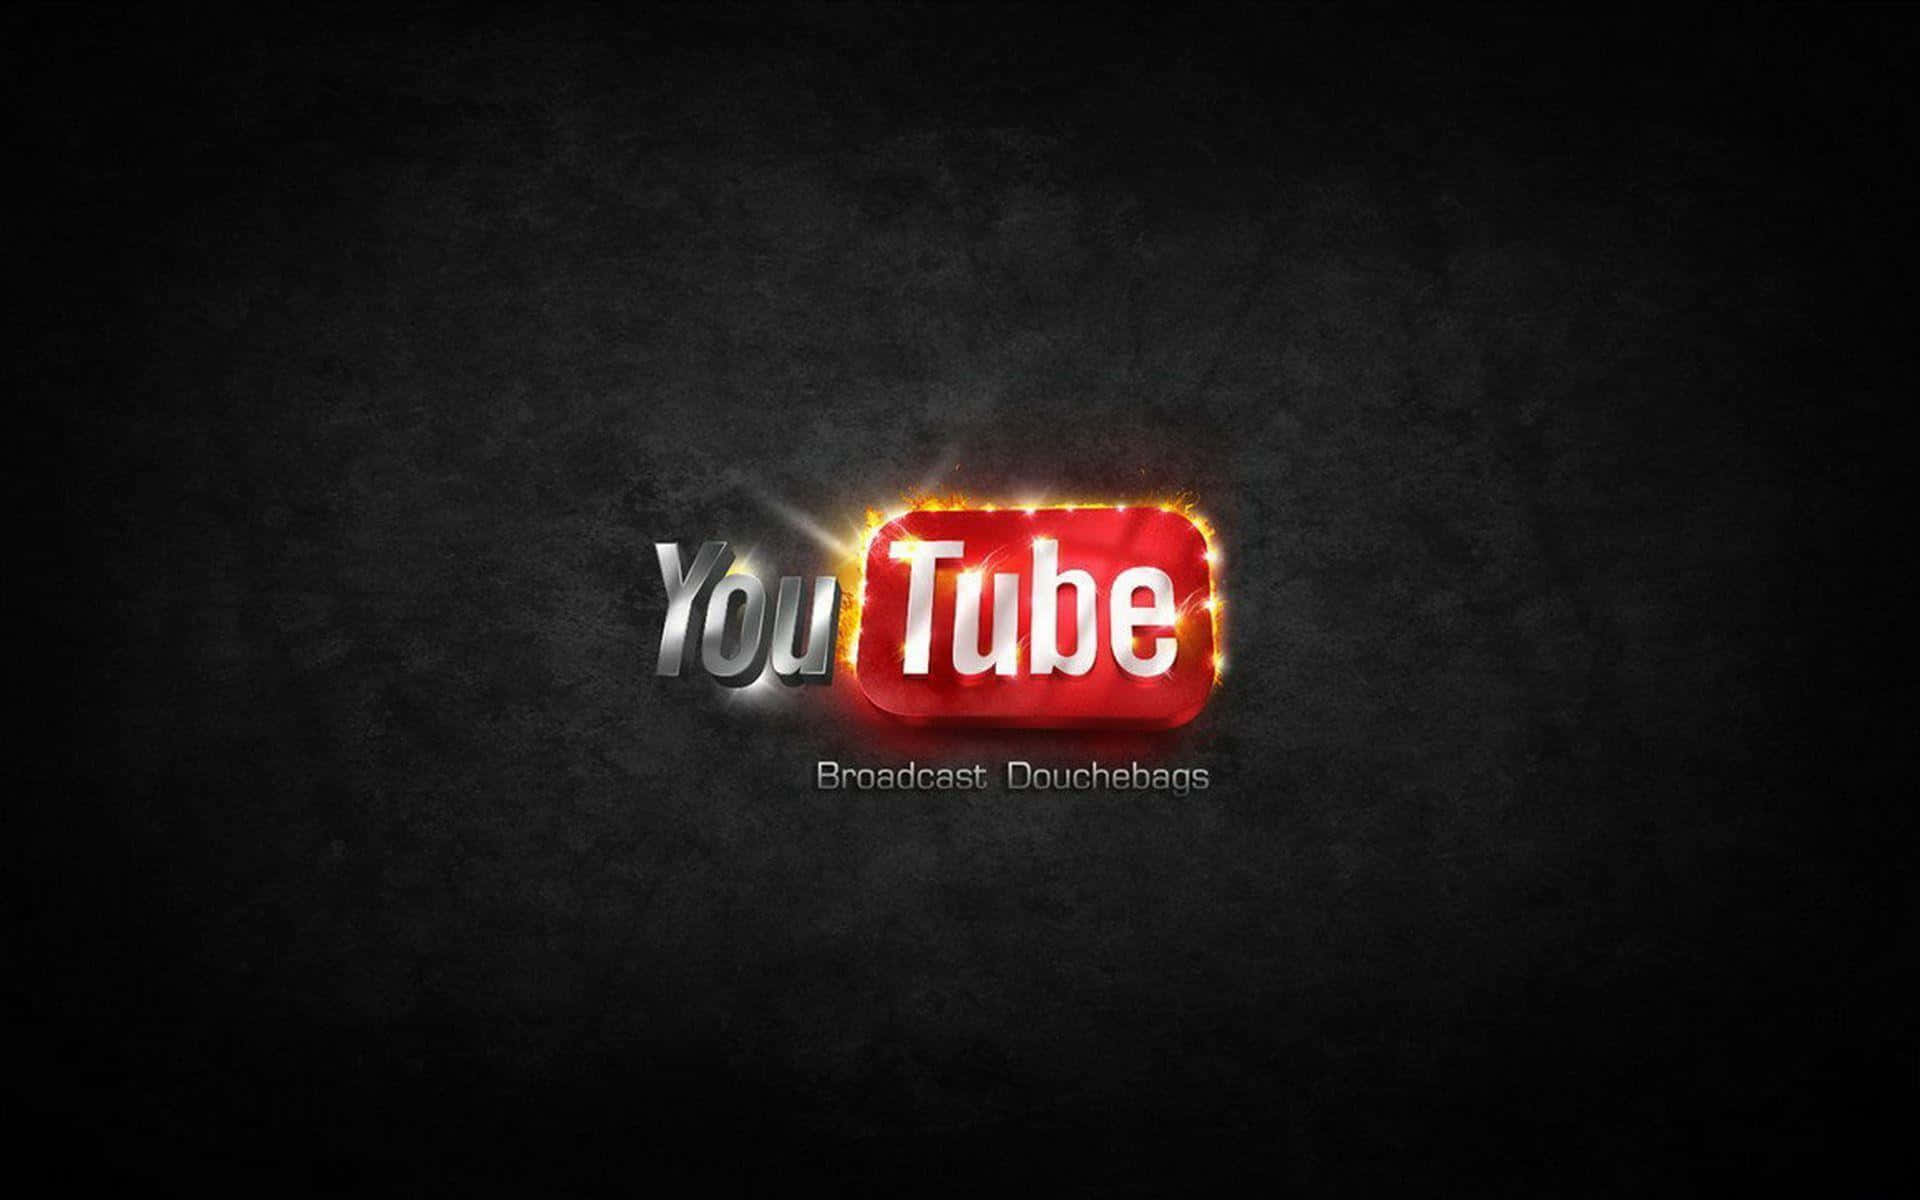 Stunning Customized YouTube Logo Background